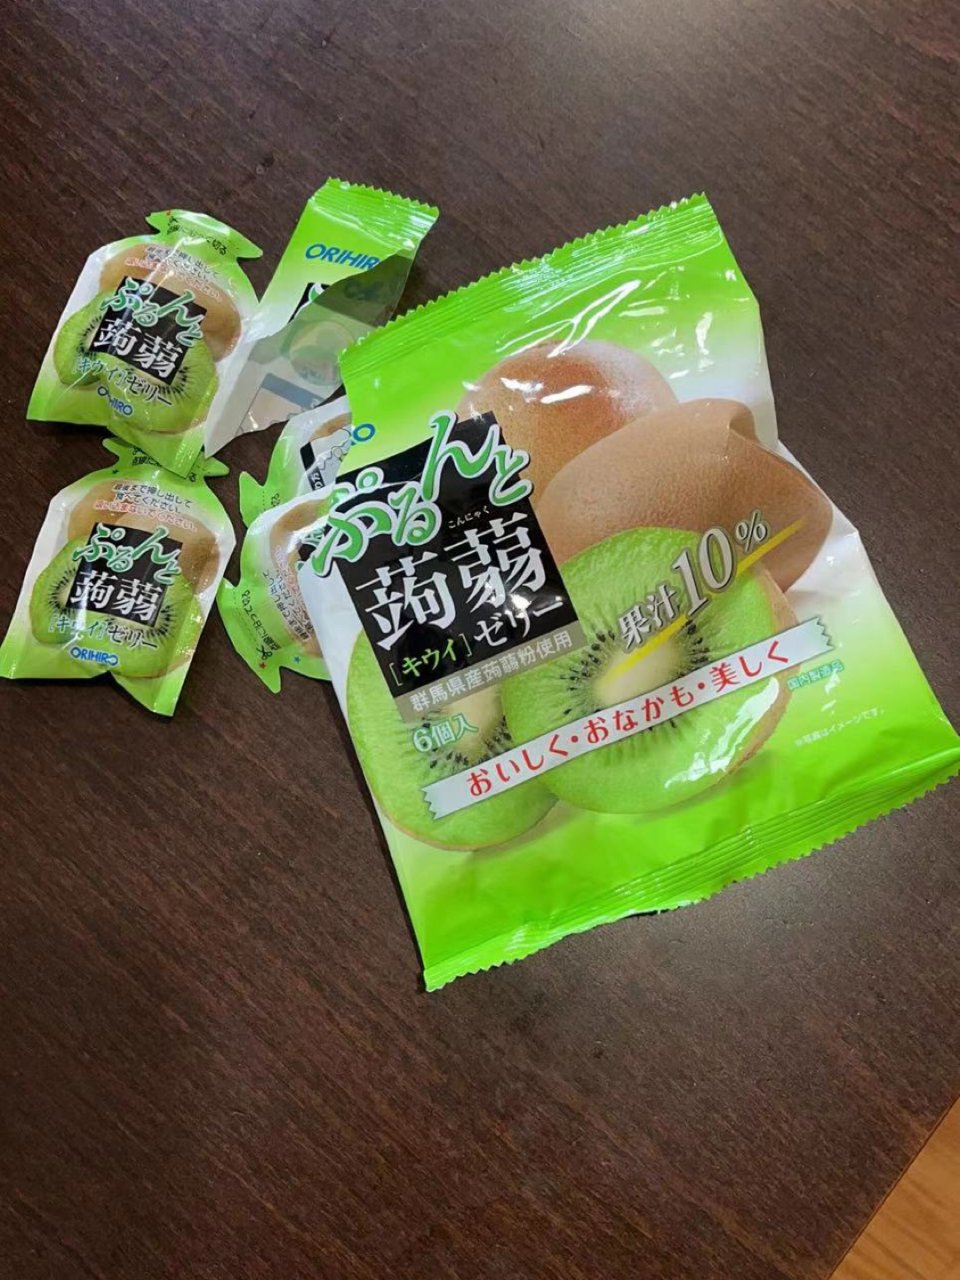 日本ORIHIRO 蒟蒻果凍低卡高纖可吸果汁 #青提味 6粒装 - 亚米网